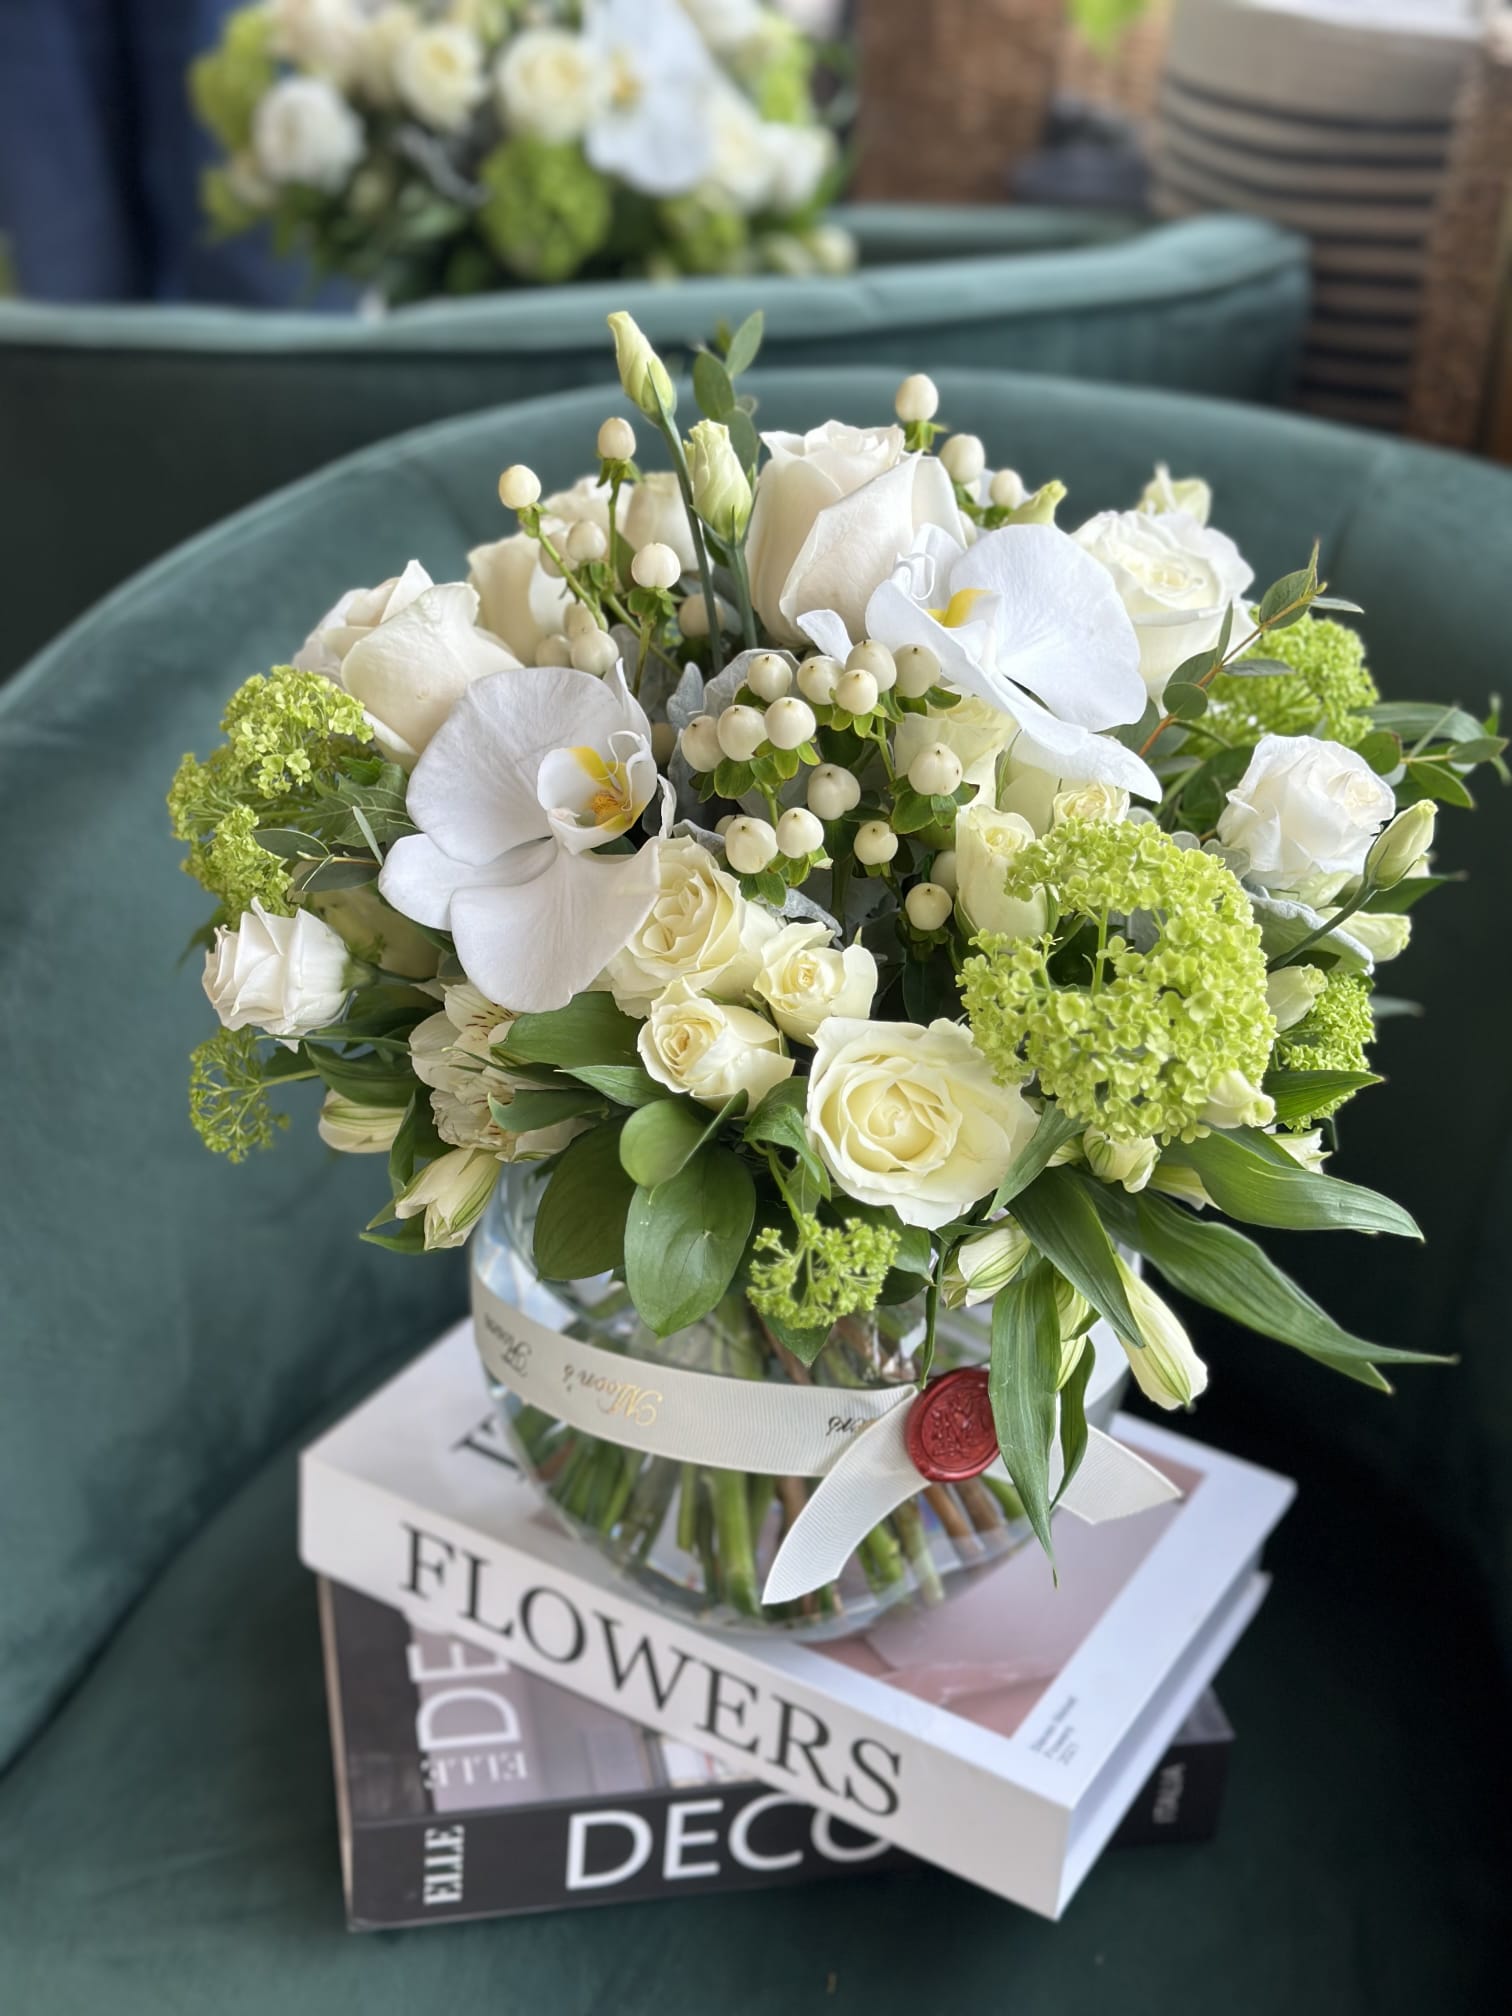 Toronto Flower Delivery - Premium Floral Arrangements